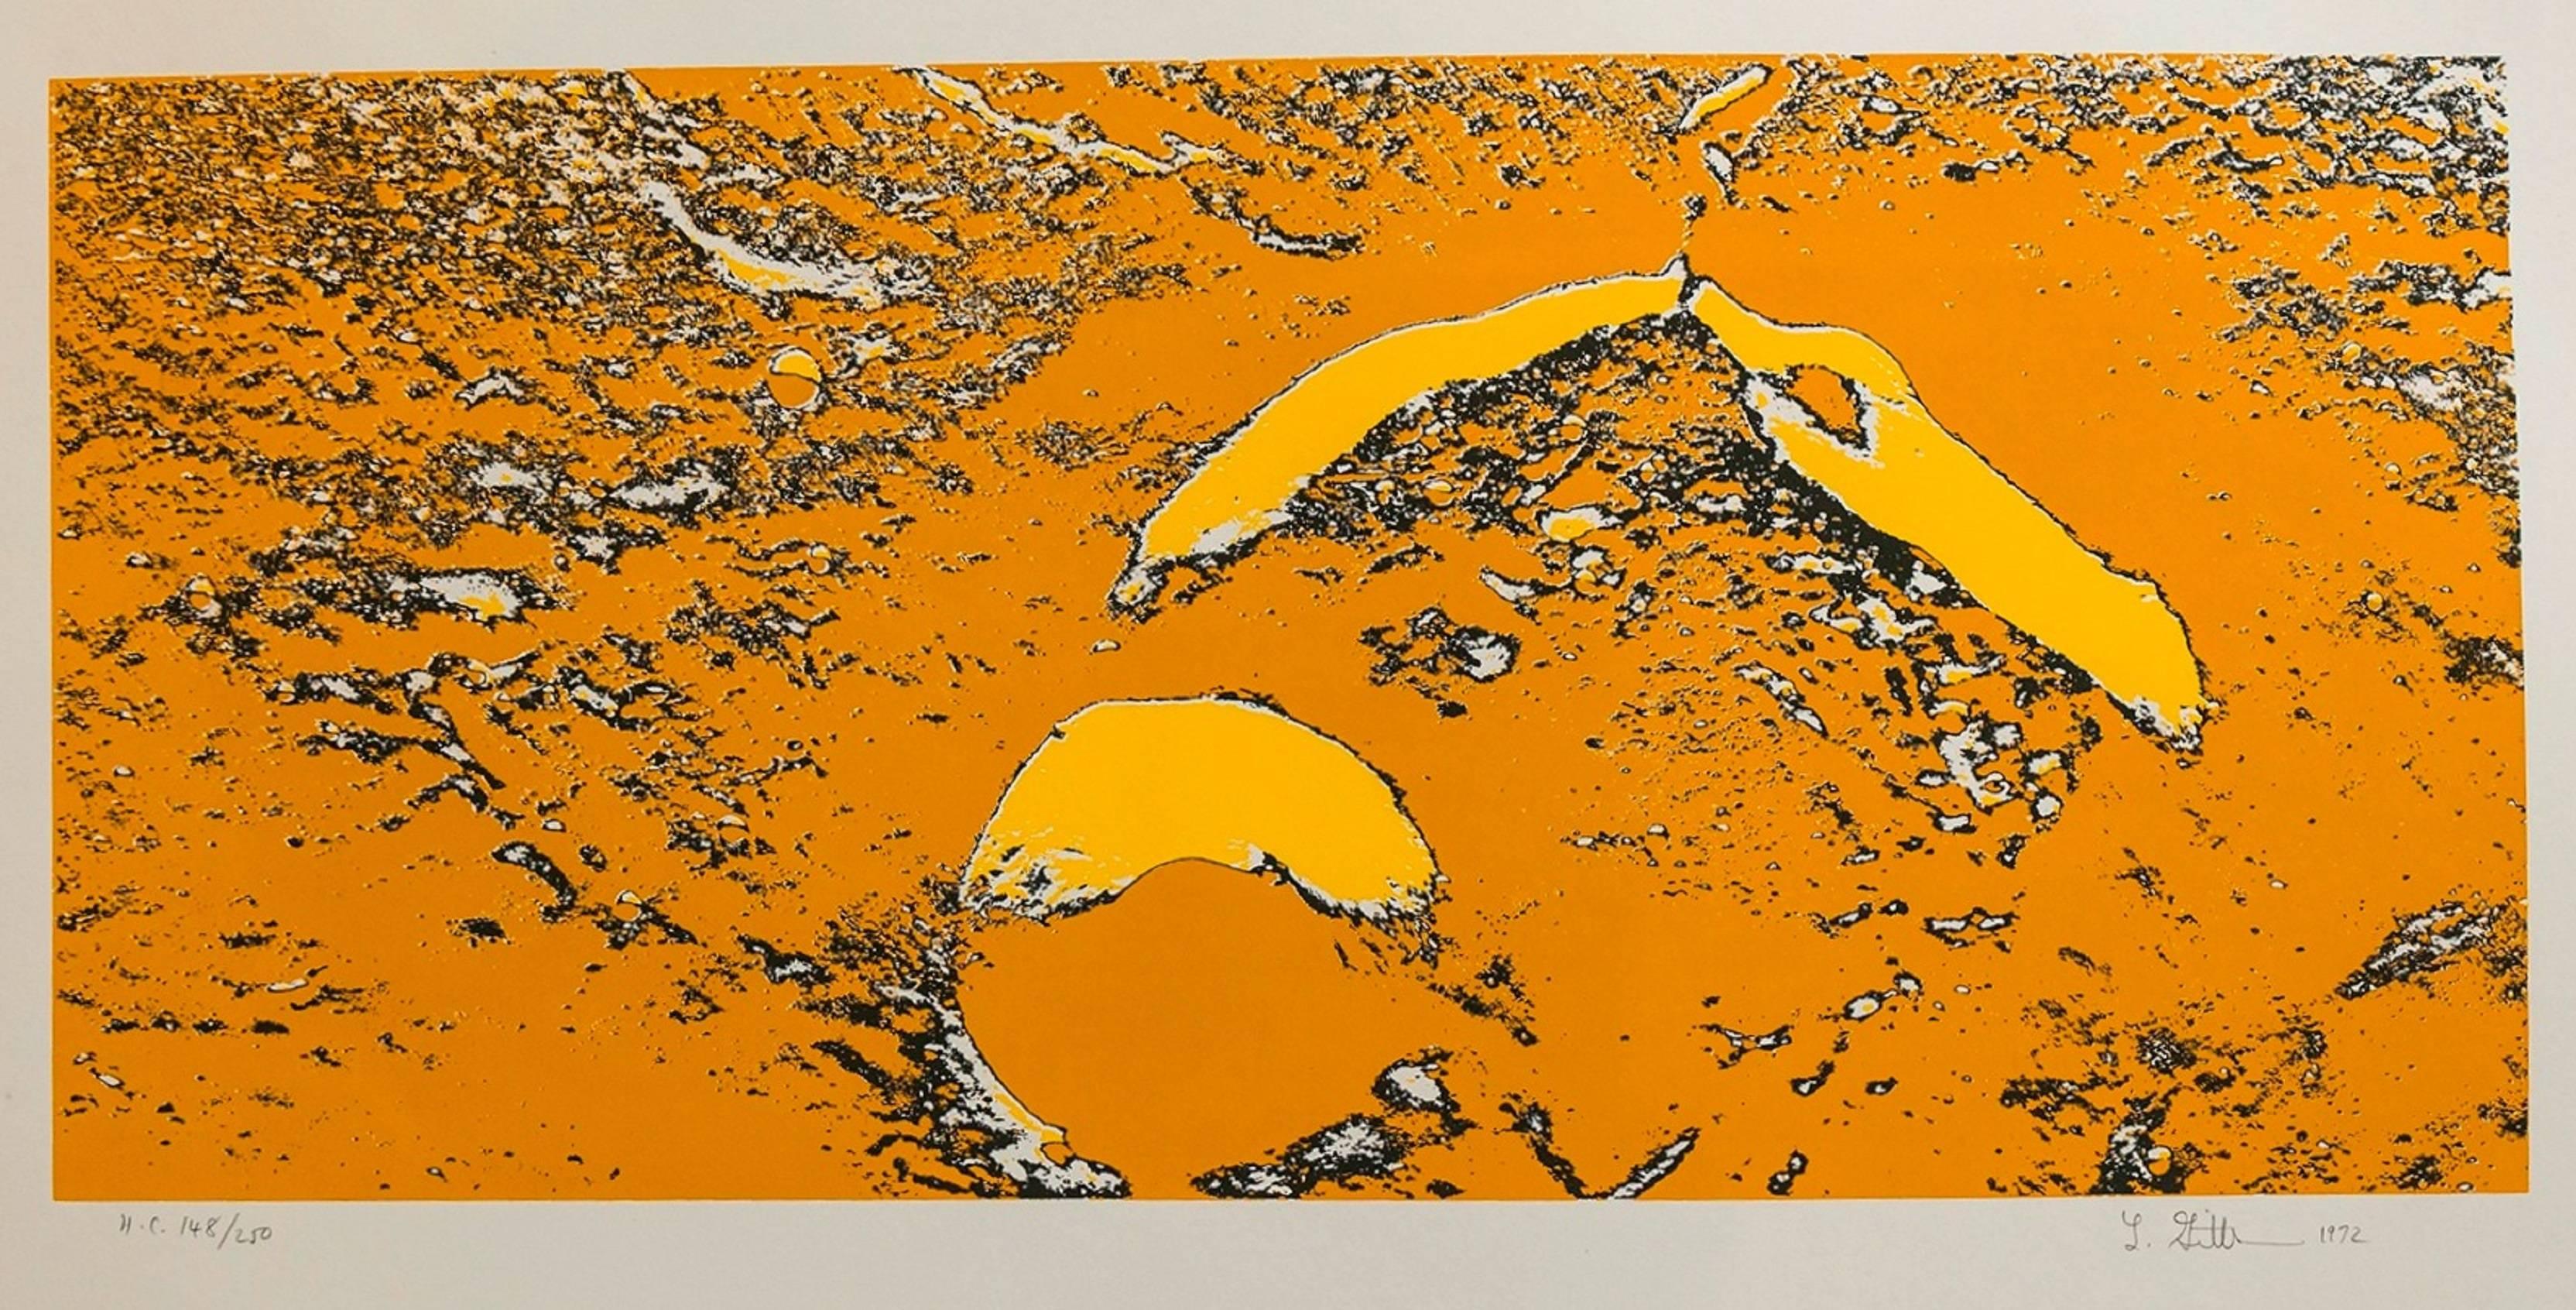 Len Gittleman Landscape Print - Lunar Landscape Abstract Signed Numbered Screenprint Yellow